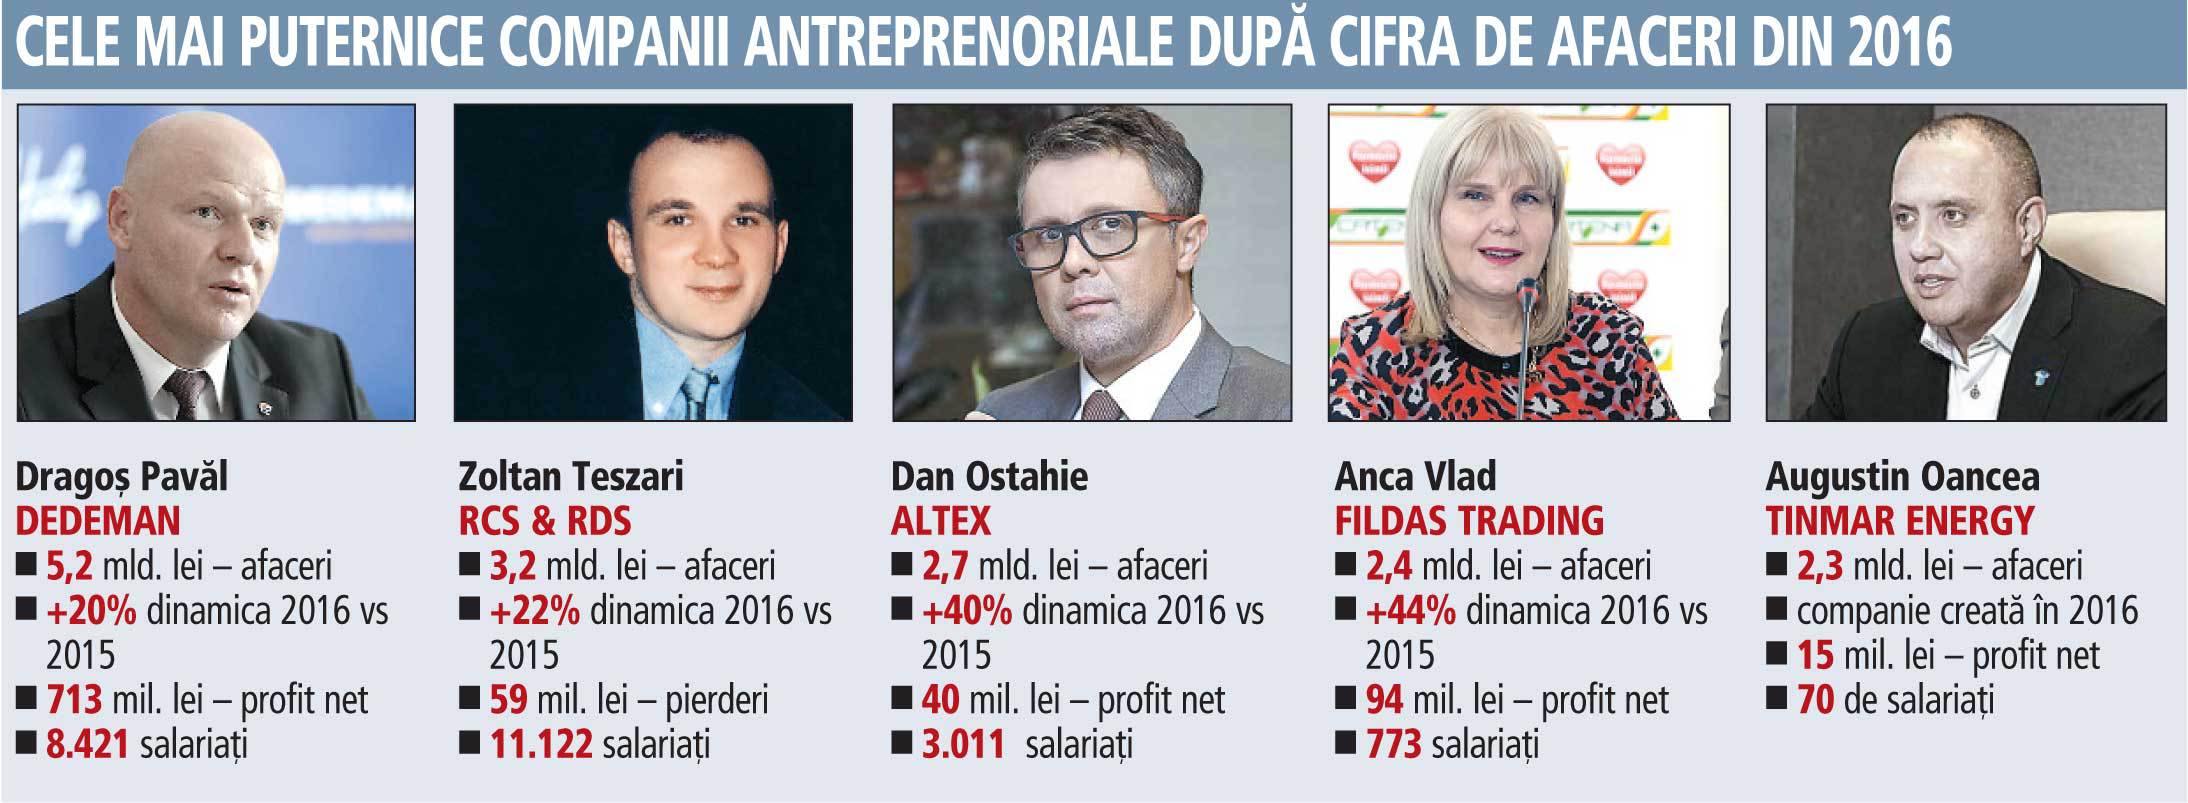 Topul celor mai mari companii antreprenoriale româneşti în 2016. Din topul celor mai mari 5 firme româneşti pe 2009, doar Zoltan Teszari, RCS, mai este astăzi în acelaşi clasament, iar două firme au intrat în insolvenţă